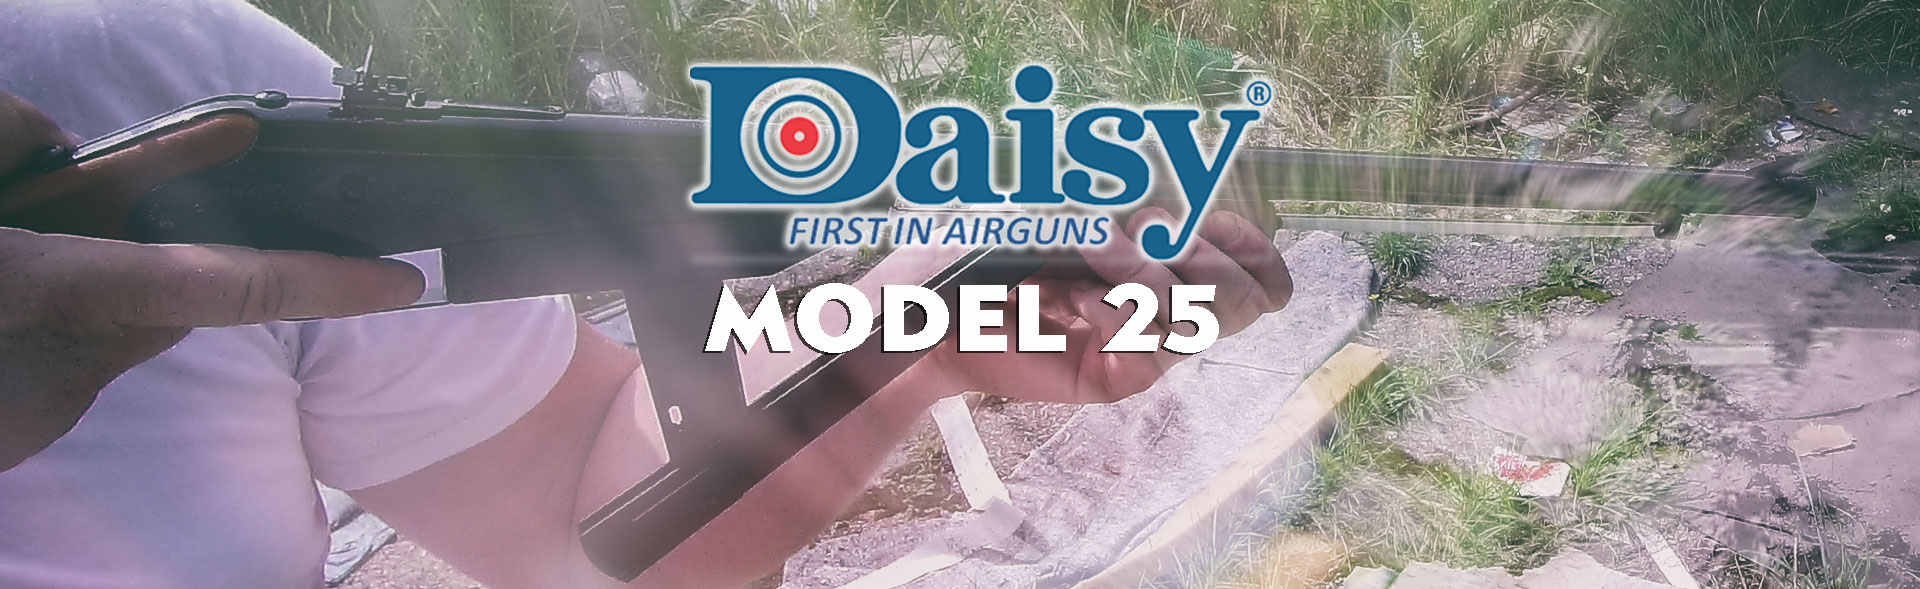 daisy model 25